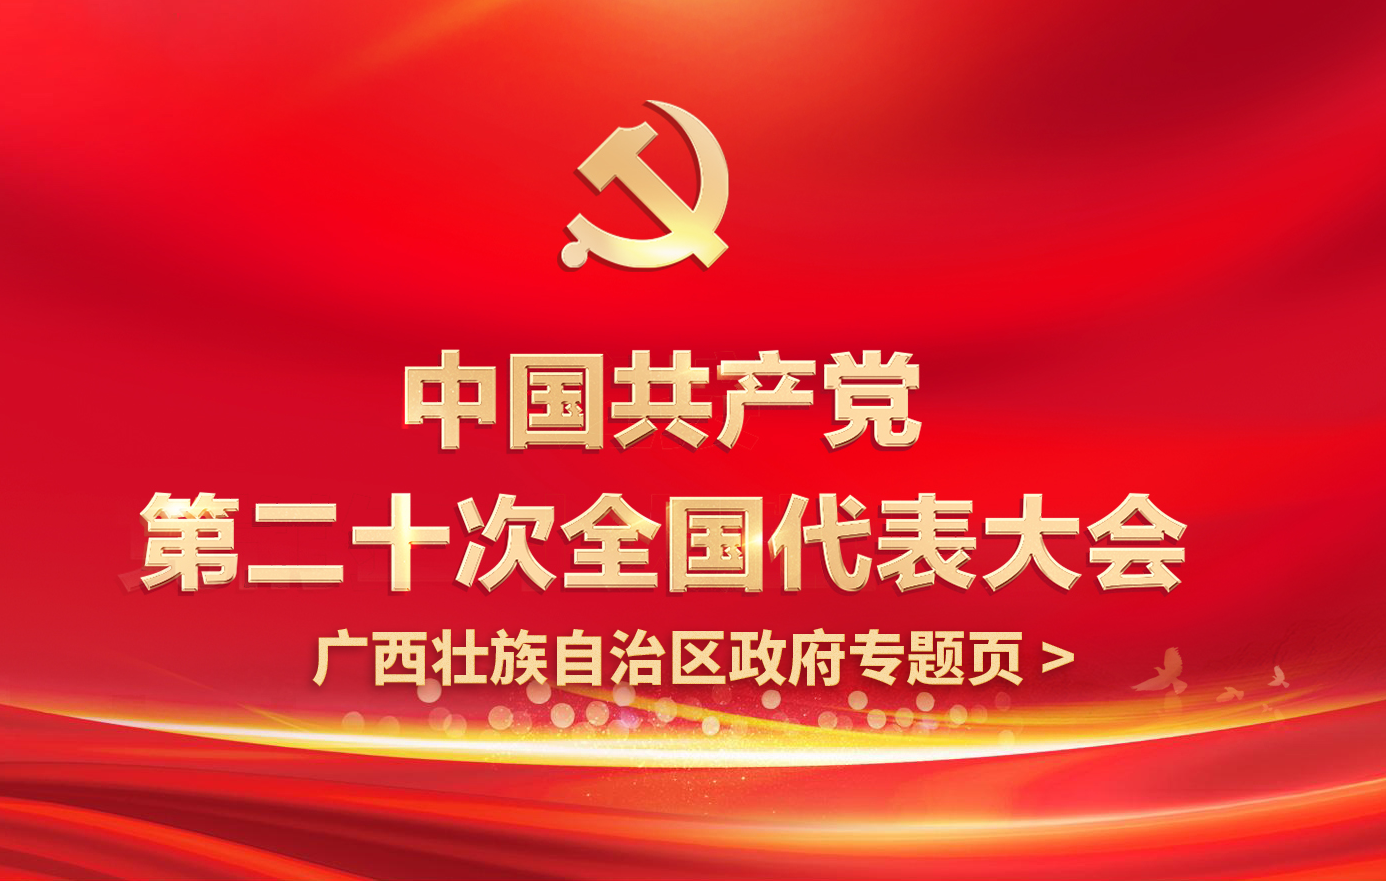 中国共产党第二十次全国代表大会广西政府专题